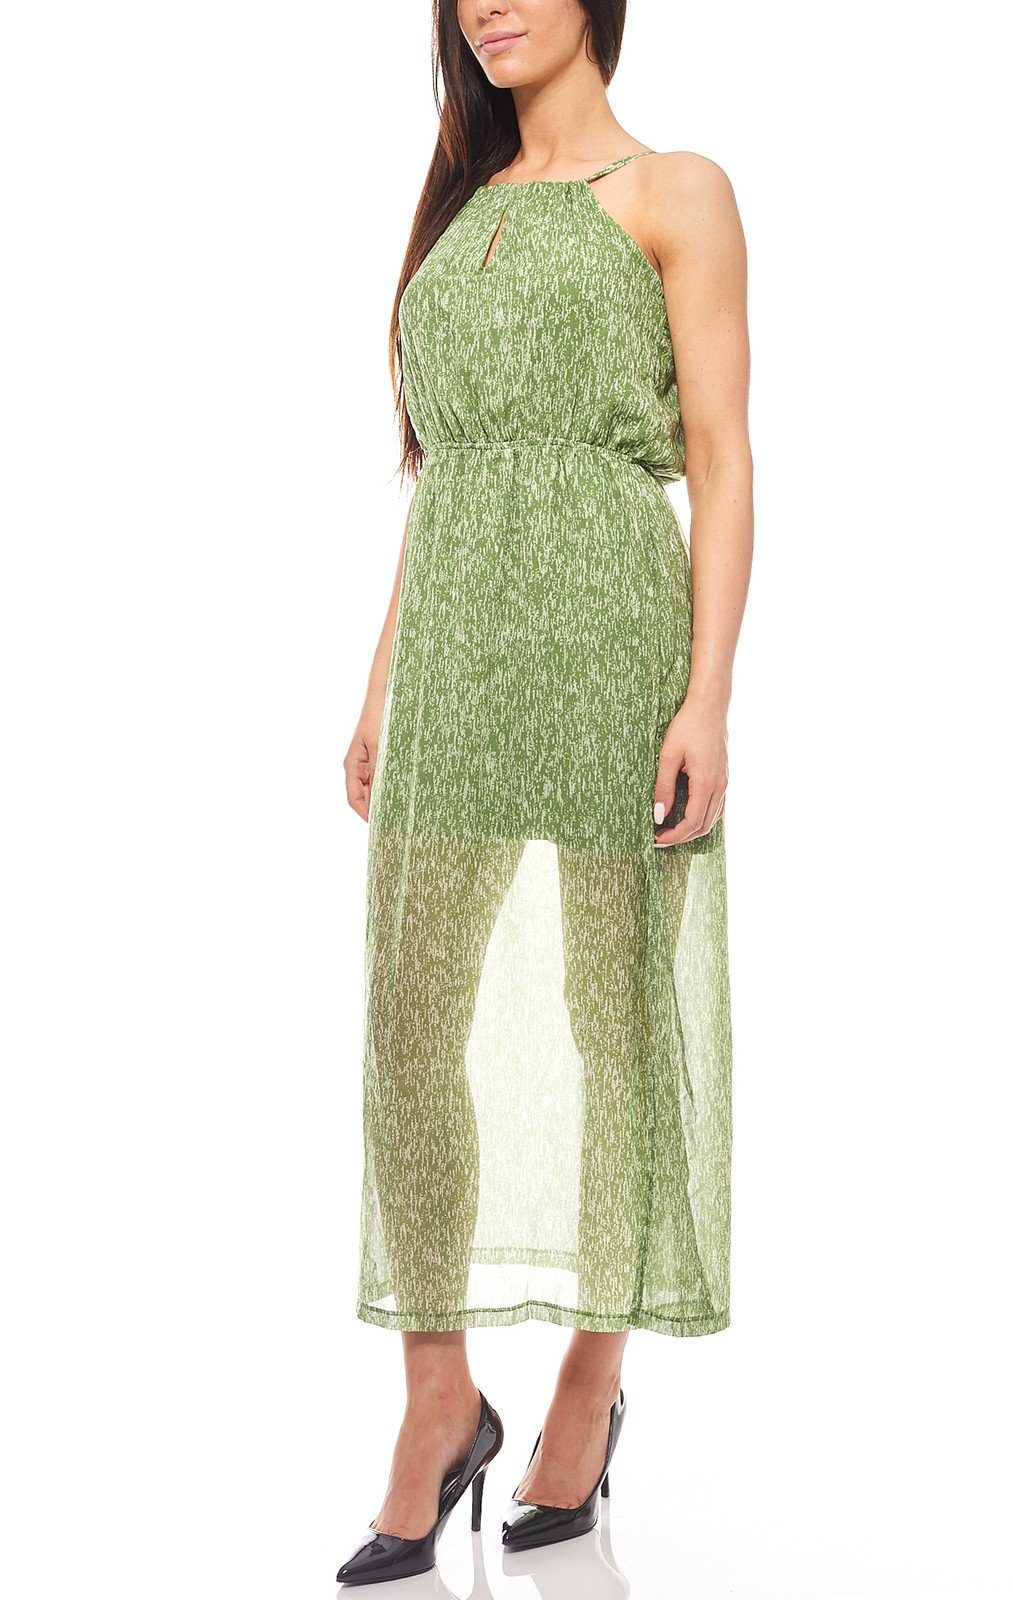 Heine Sommerkleid »Transparentes Kleid Sommer-Kleid mit Unterkleid Grün  heine« online kaufen | OTTO